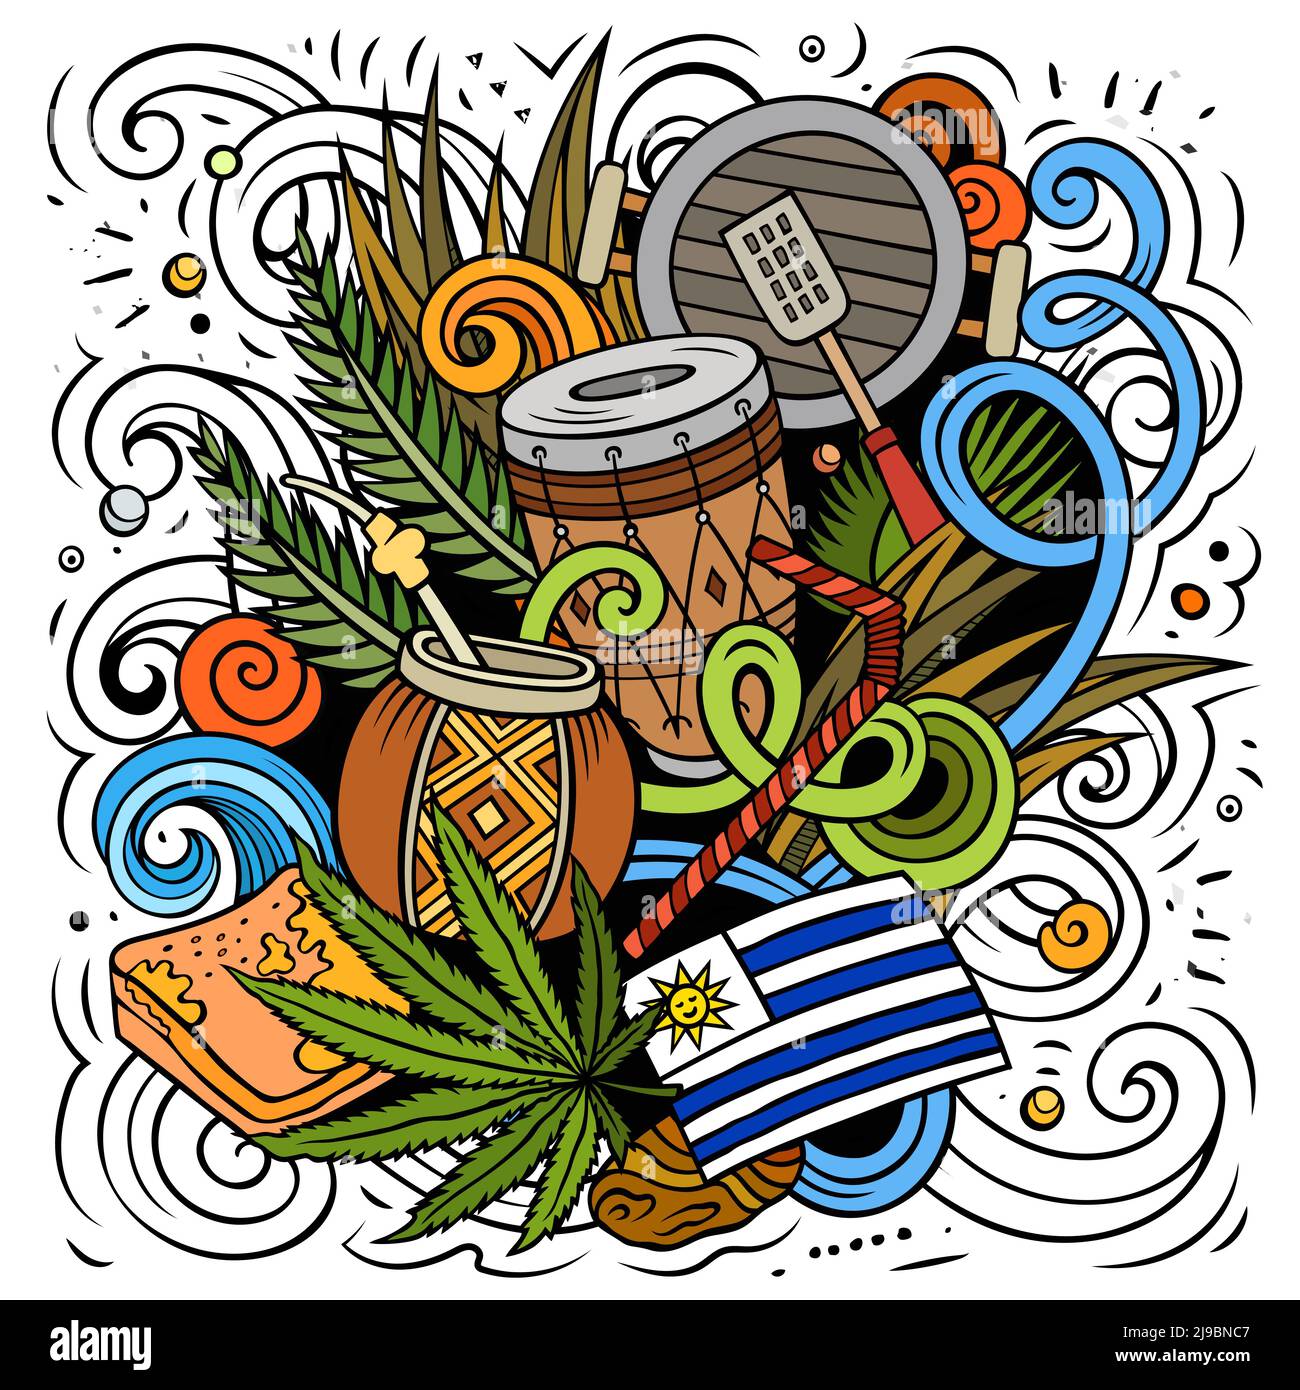 Uruguay hand drawn cartoon doodles illustration. Stock Vector